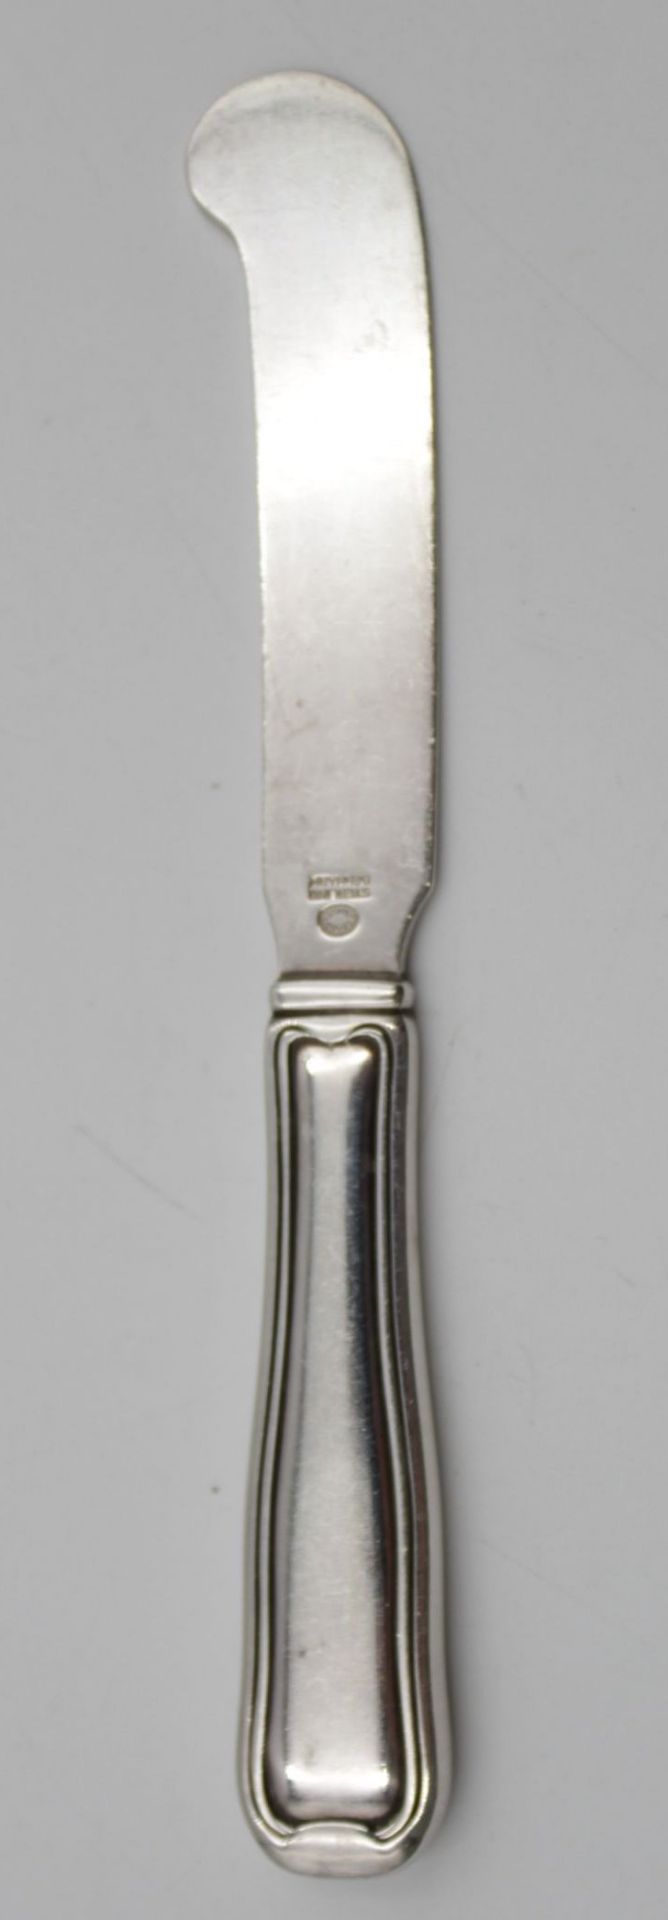 Ein Buttermesser Georg Jensen Fadenmuster , Silber 925 Gewicht 34 gr L-15cm . - Bild 2 aus 3